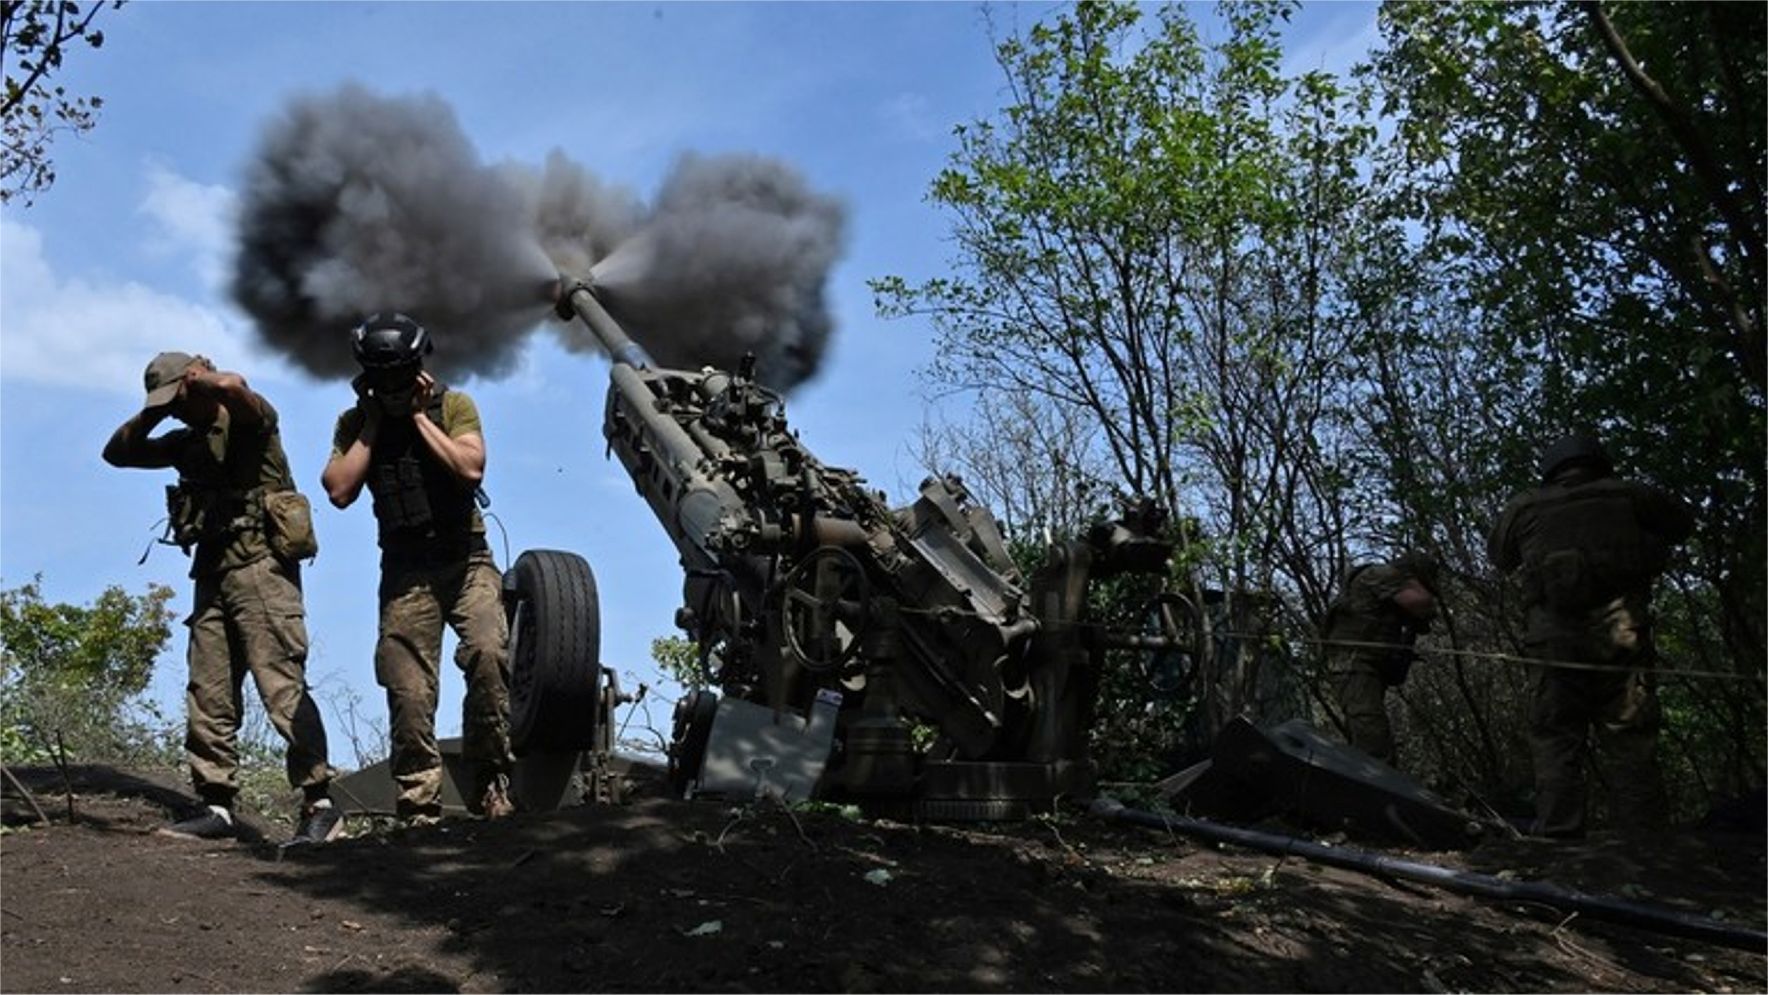 USA pošlú do Kyjeva muníciu riadenú GPS – Politico